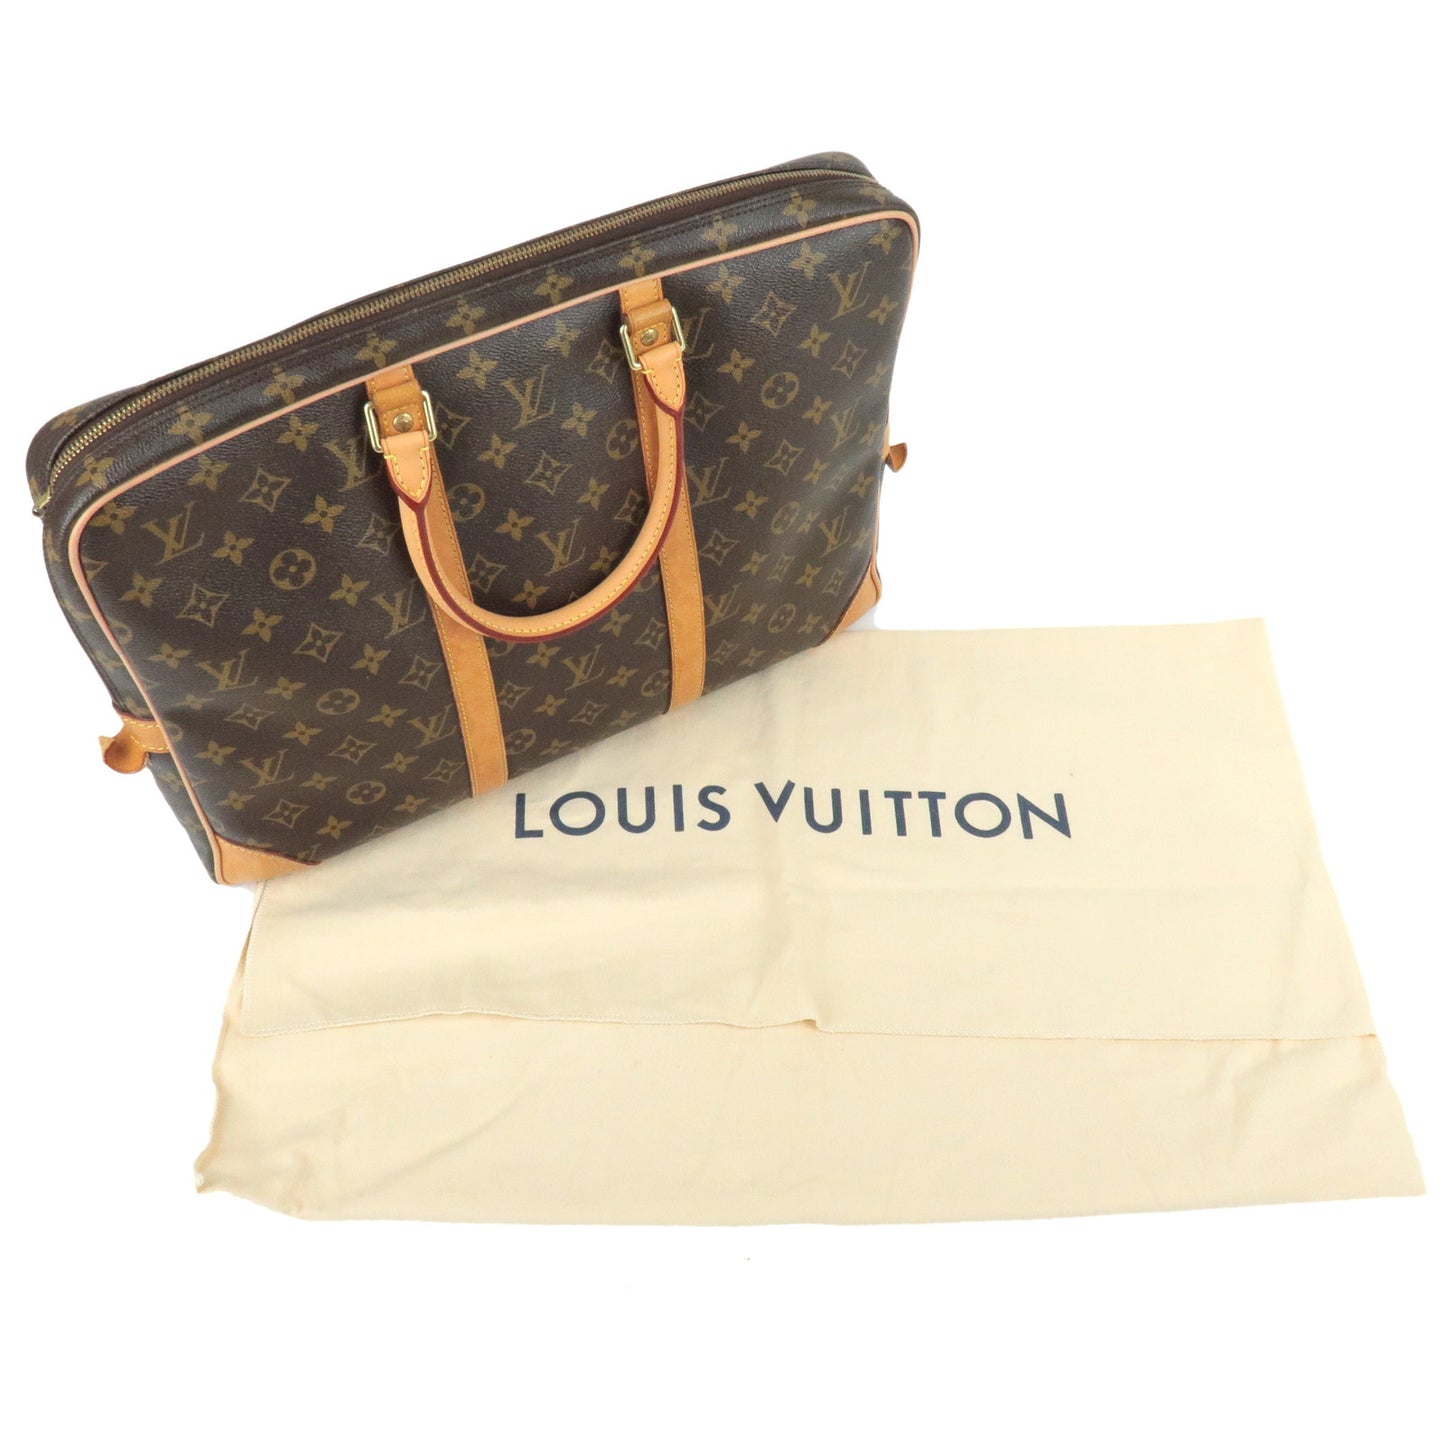 LOUIS VUITTON Porte Documents Voyage Monogram Canvas Briefcase Bag